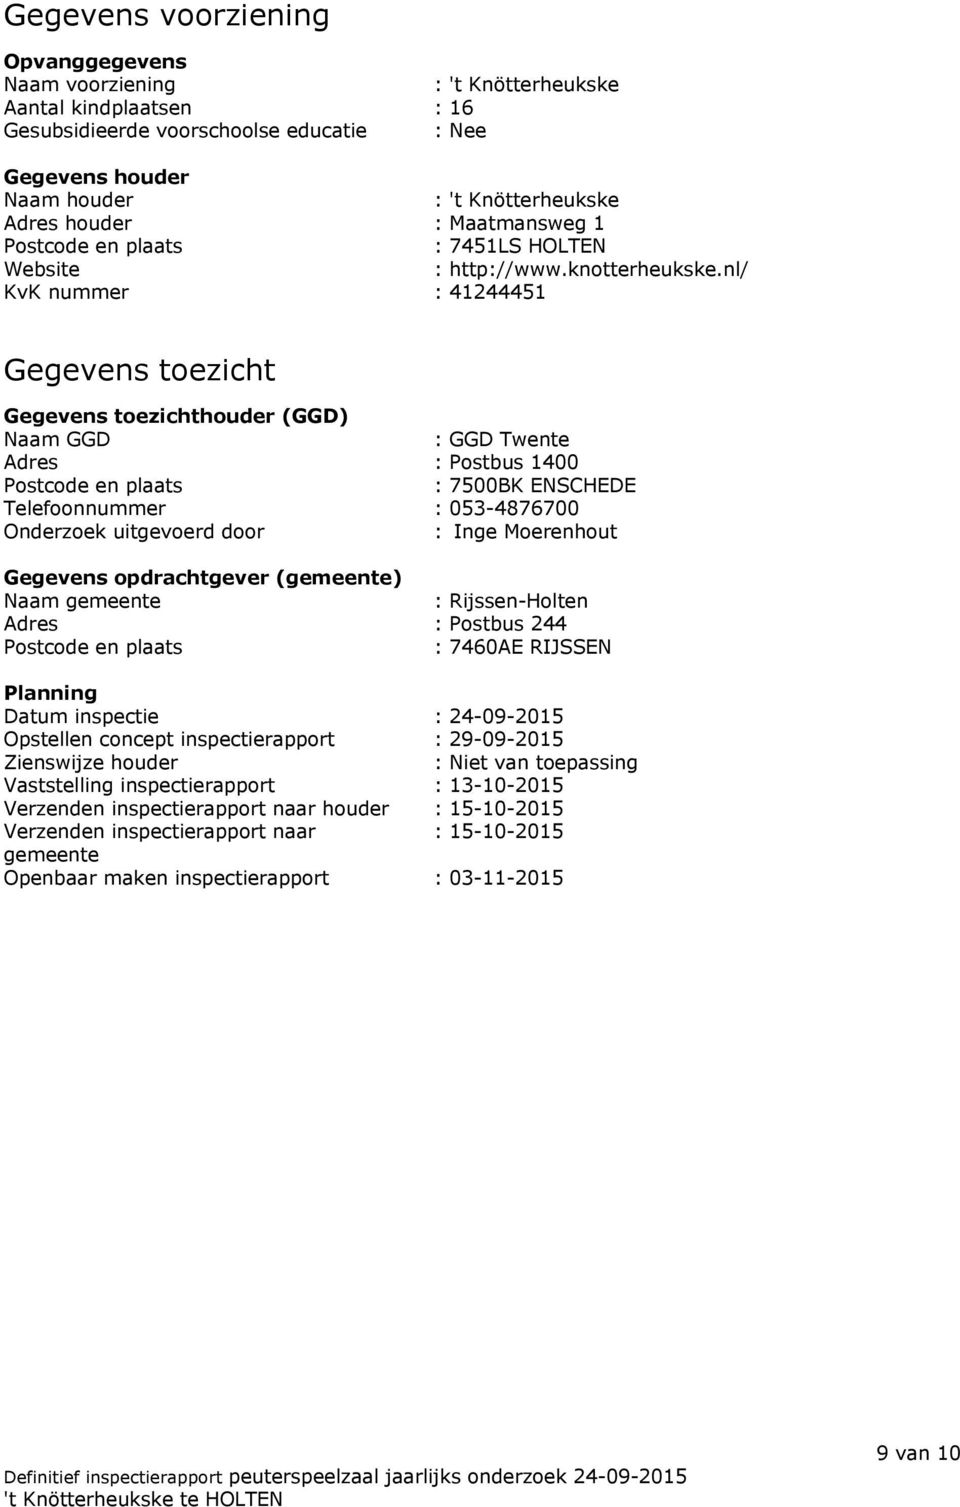 nl/ KvK nummer : 41244451 Gegevens toezicht Gegevens toezichthouder (GGD) Naam GGD : GGD Twente Adres : Postbus 1400 Postcode en plaats : 7500BK ENSCHEDE Telefoonnummer : 053-4876700 Onderzoek